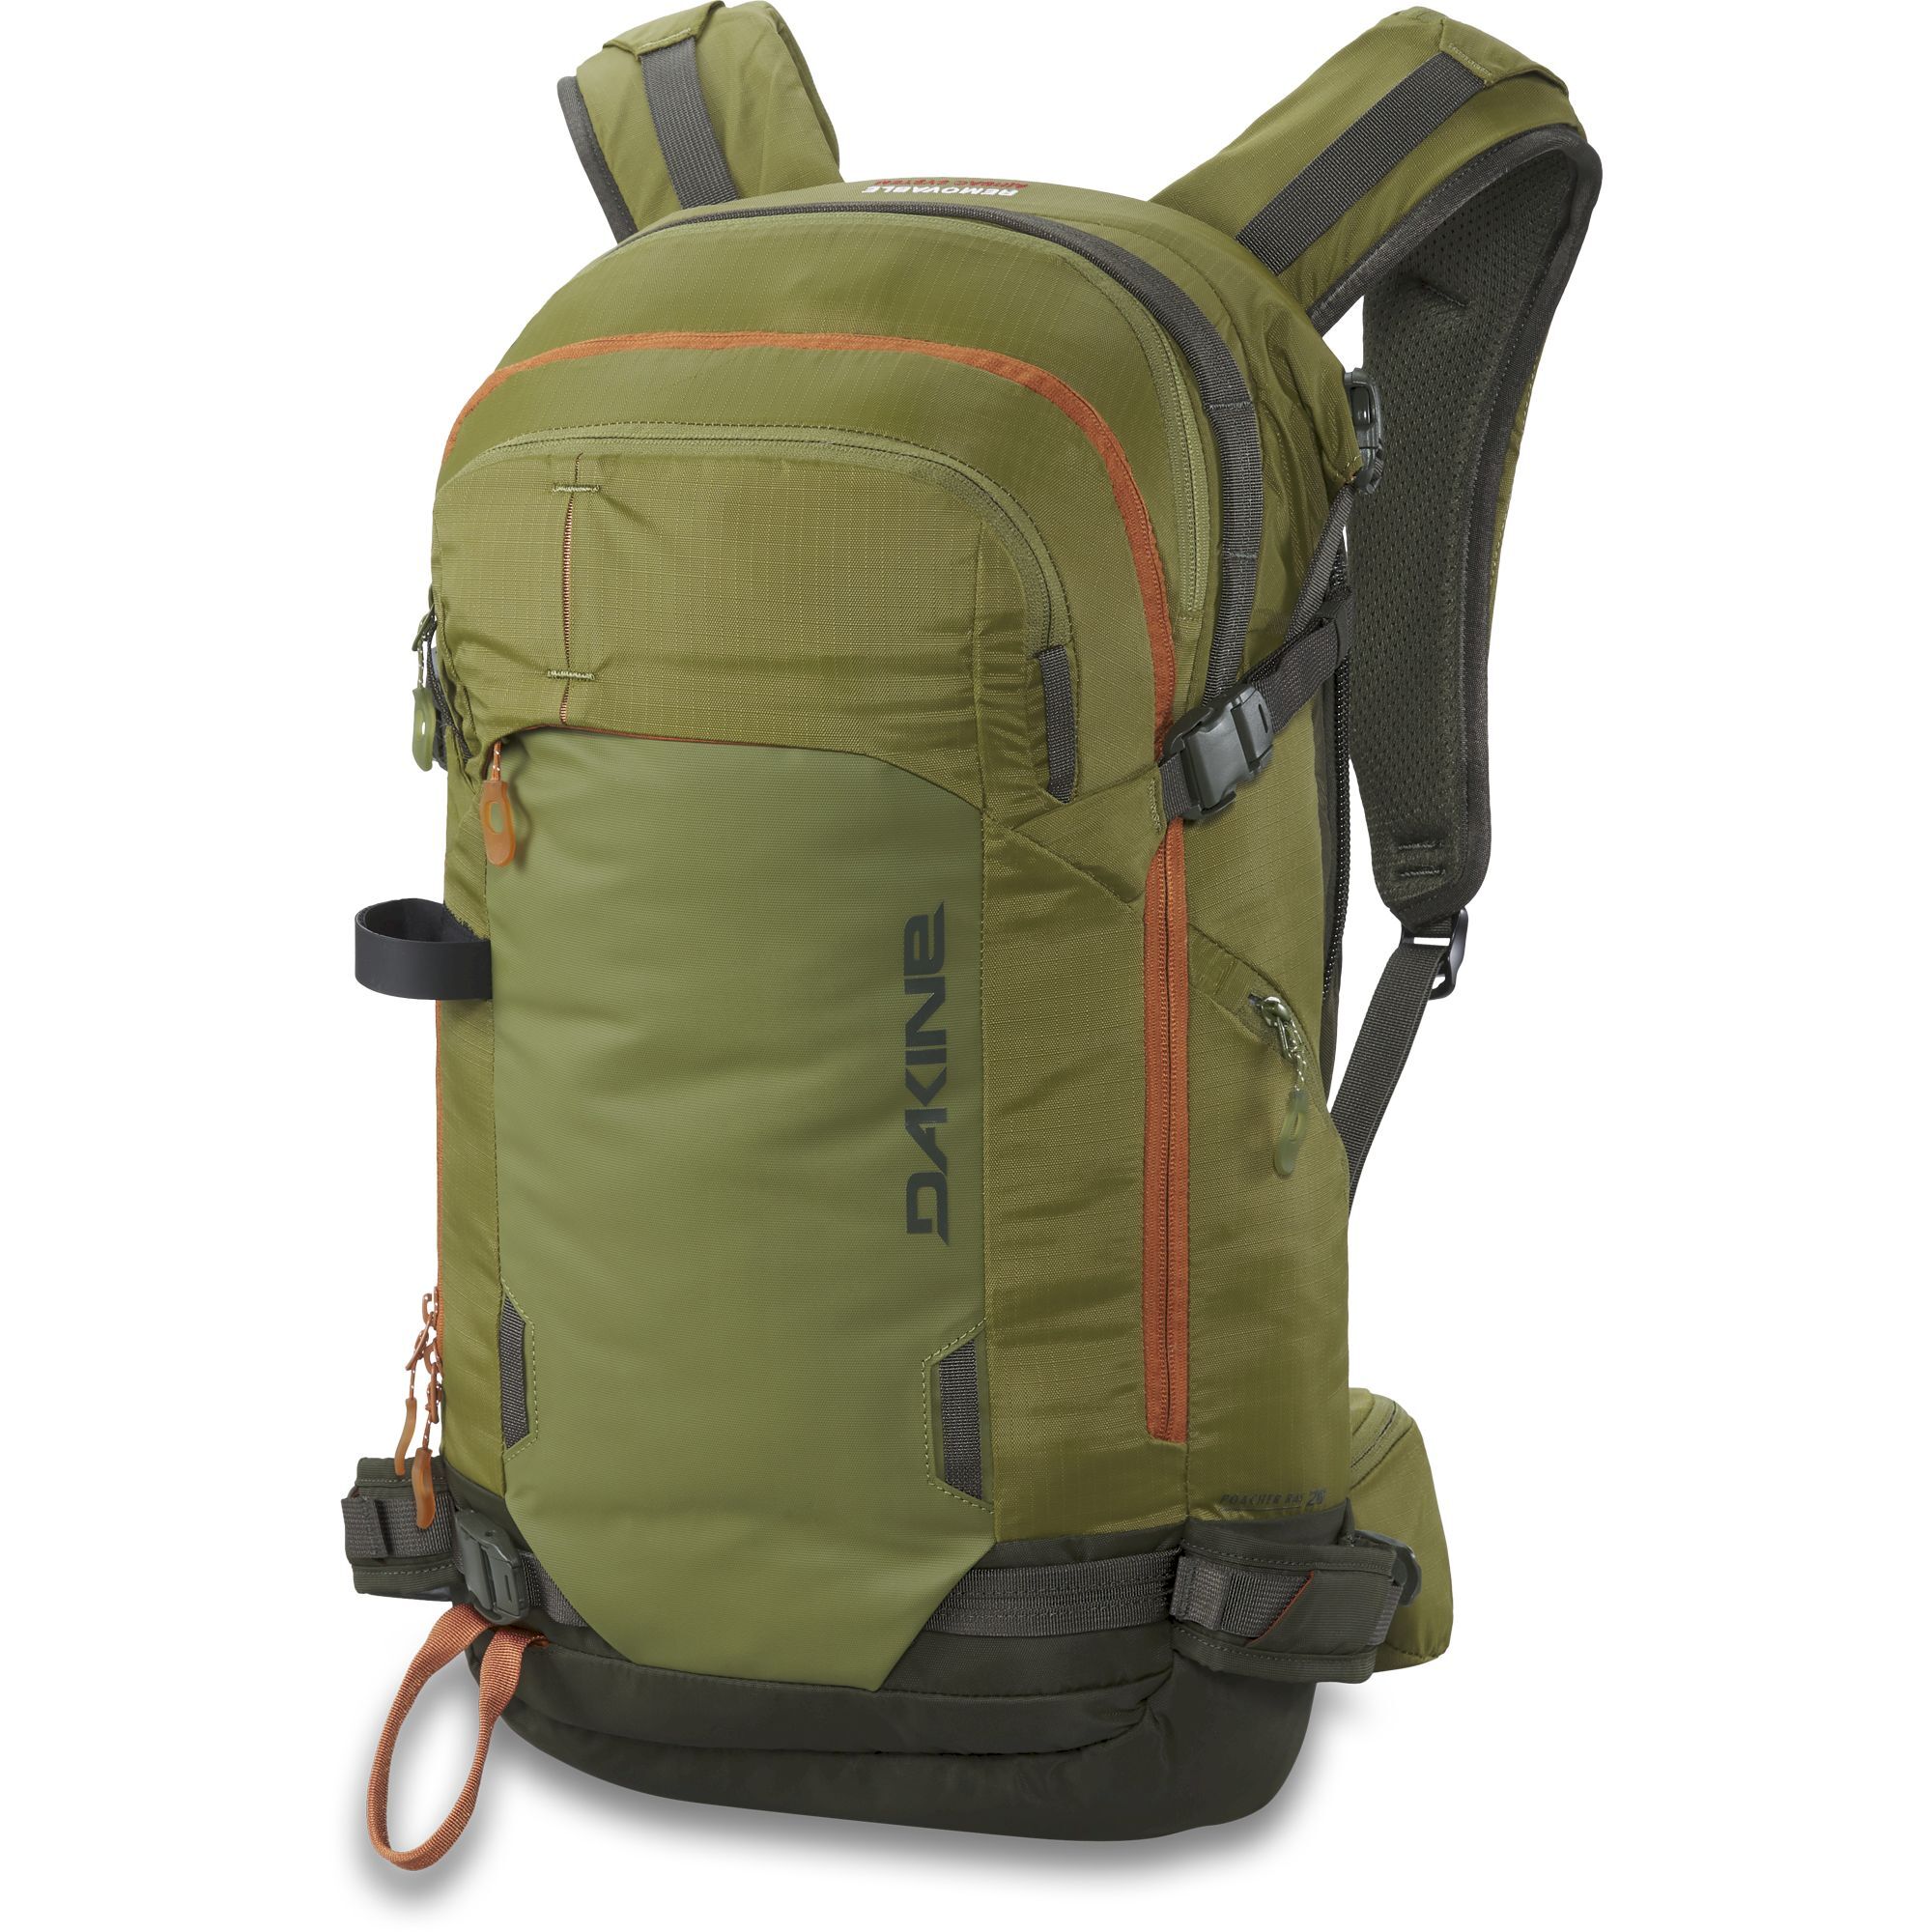 Dakine Poacher Ras 26L - Ski backpack - Men's